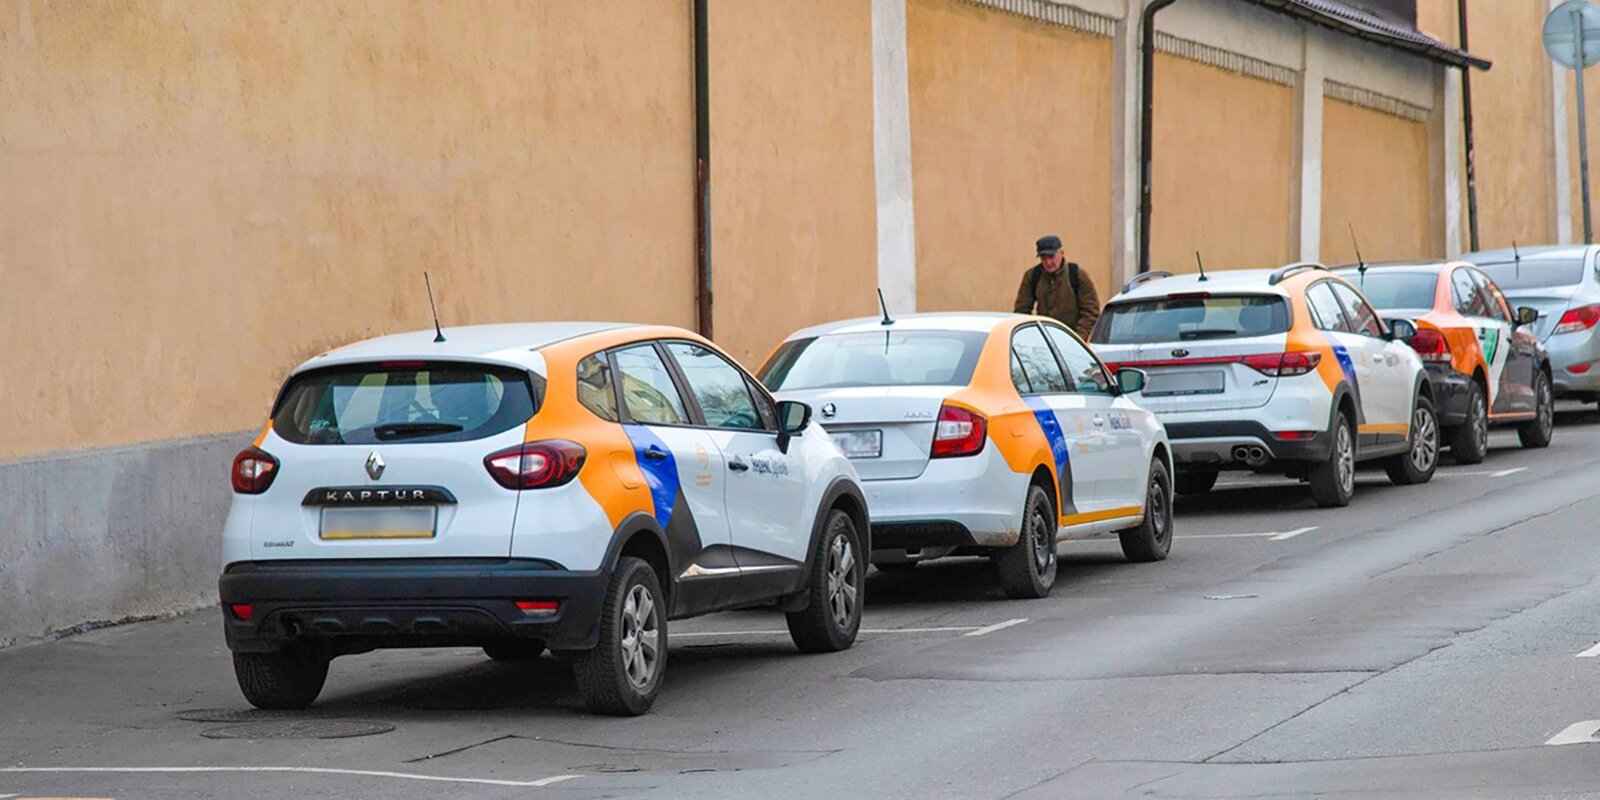 Для операторов каршеринга в Москве снизили стоимость покупки парковочных разрешений